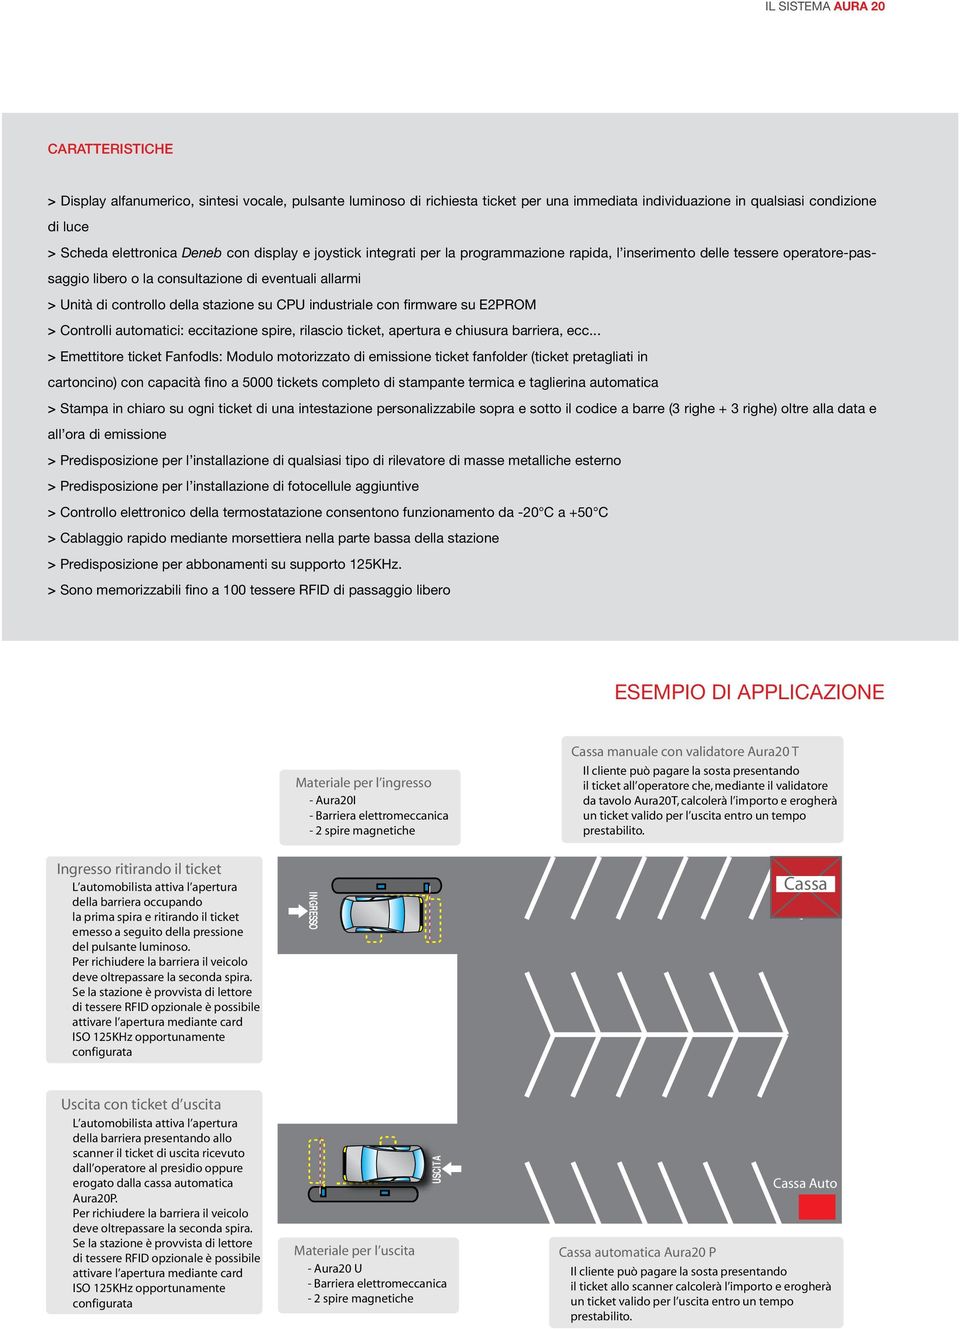 firmware su E2PROM > Controlli automatici: eccitazione spire, rilascio ticket, apertura e chiusura barriera, ecc.